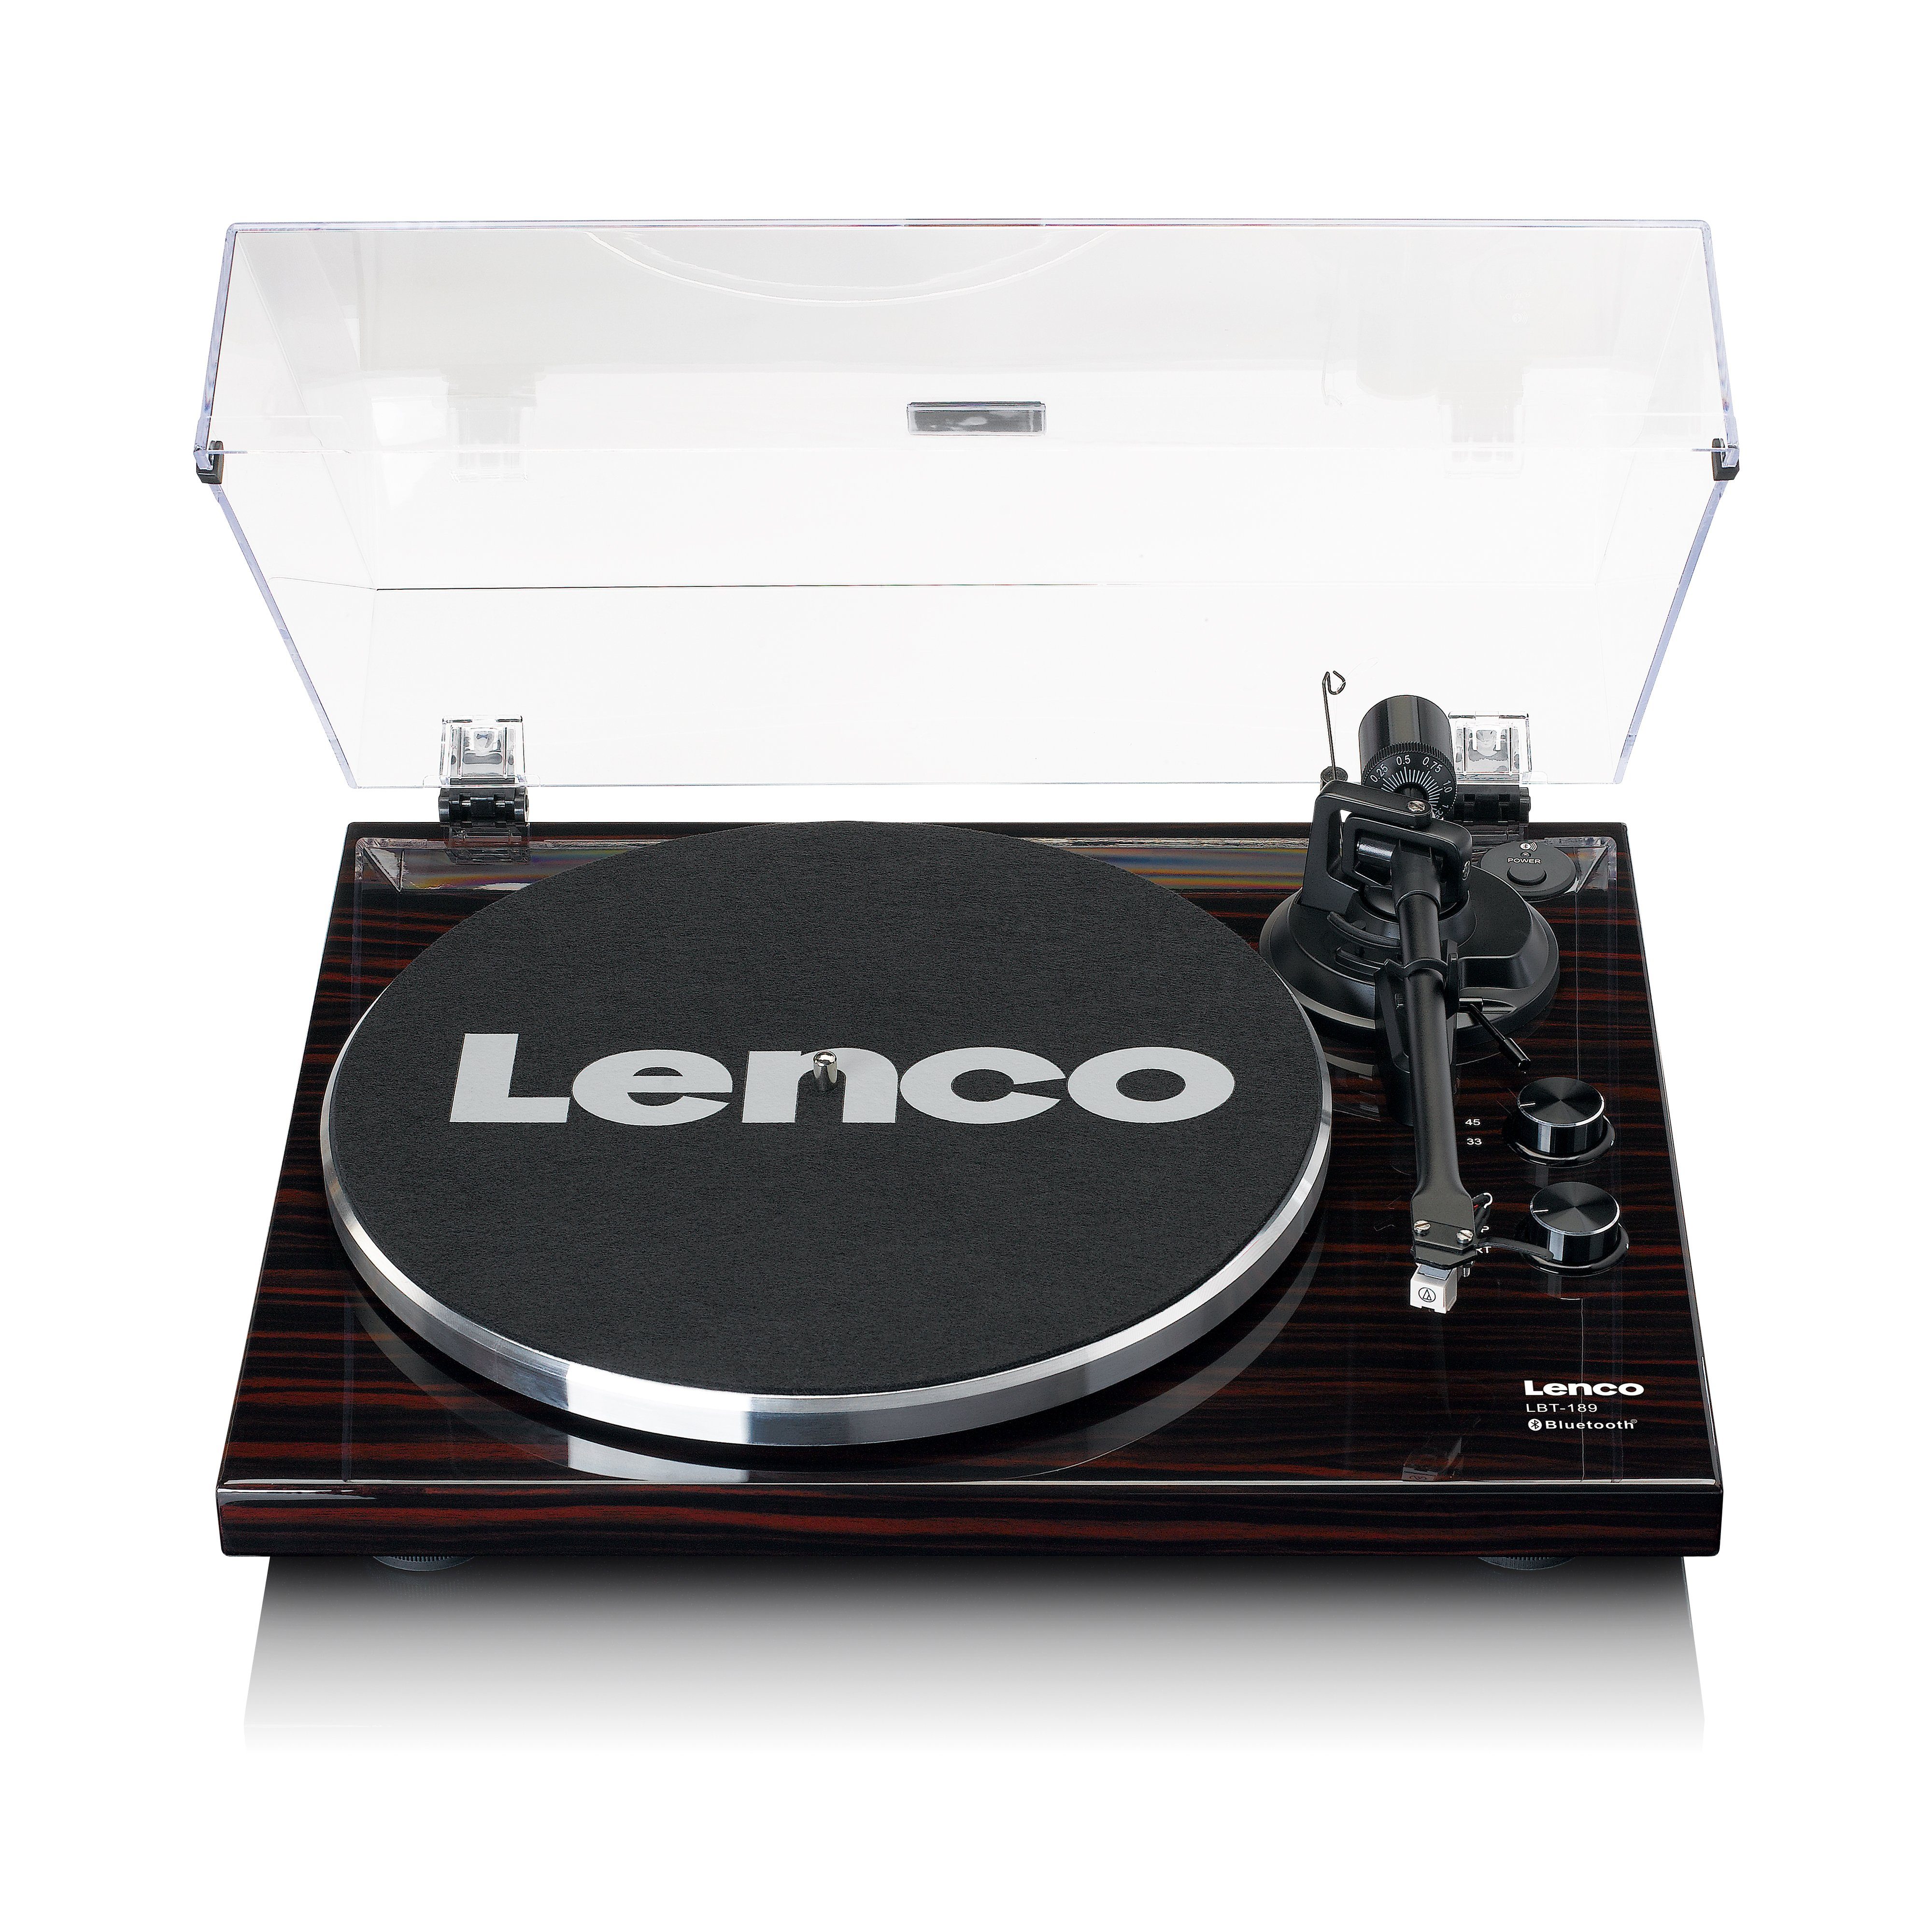 Lenco LBT-189WA Plattenspieler (Riemenantrieb, Bluetooh), USB-Anschluss für  PC-Verbindung zur Umwandlung von Vinyl in MP3